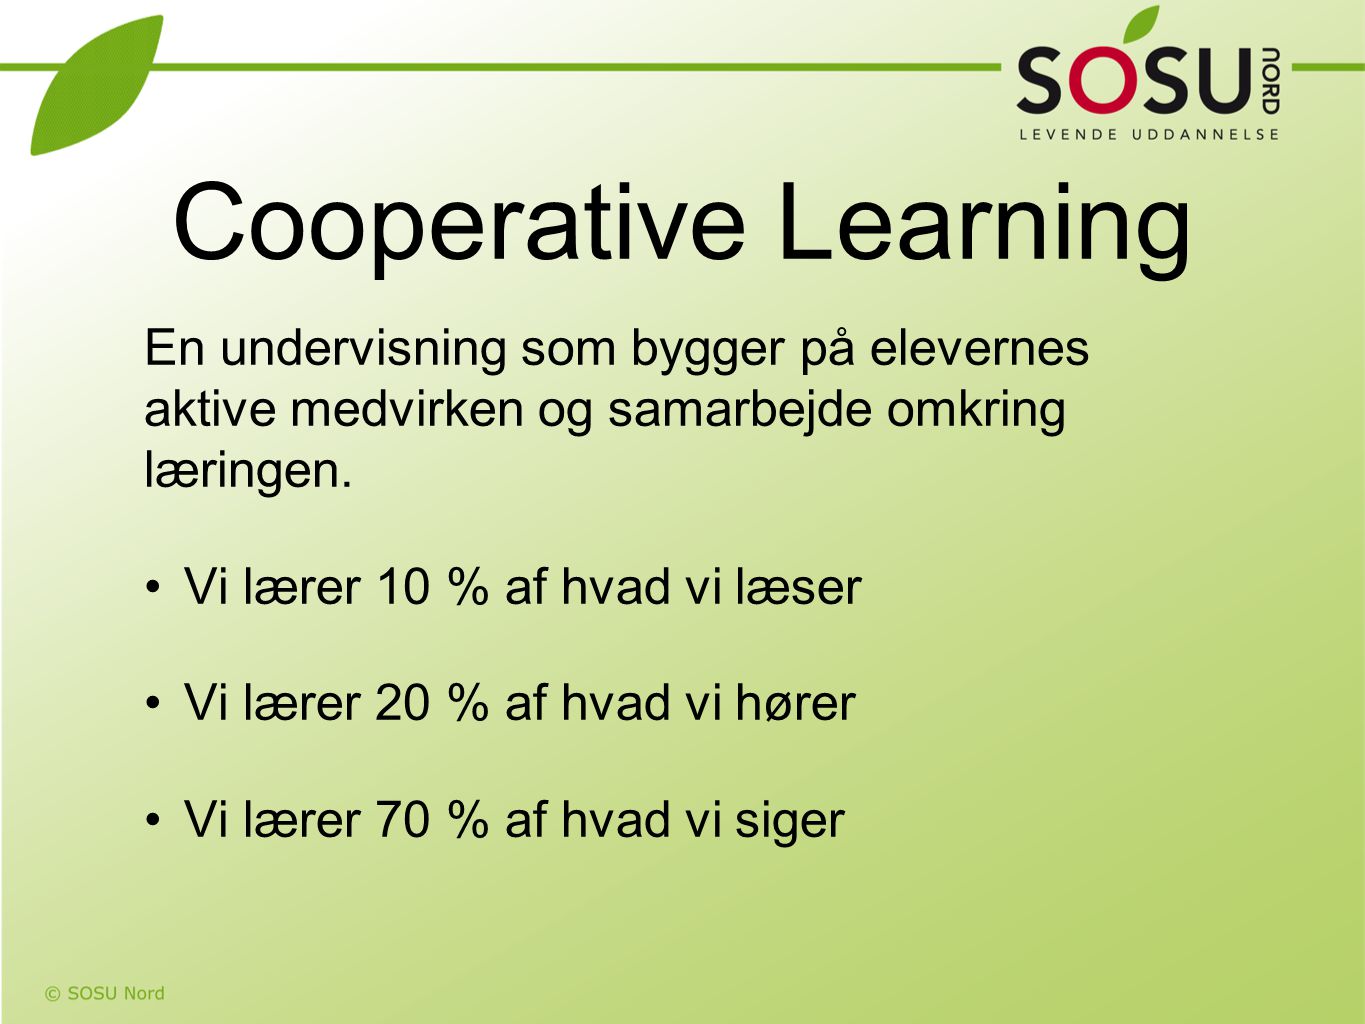 Cooperative Learning En undervisning som bygger på elevernes aktive medvirken og samarbejde omkring læringen.